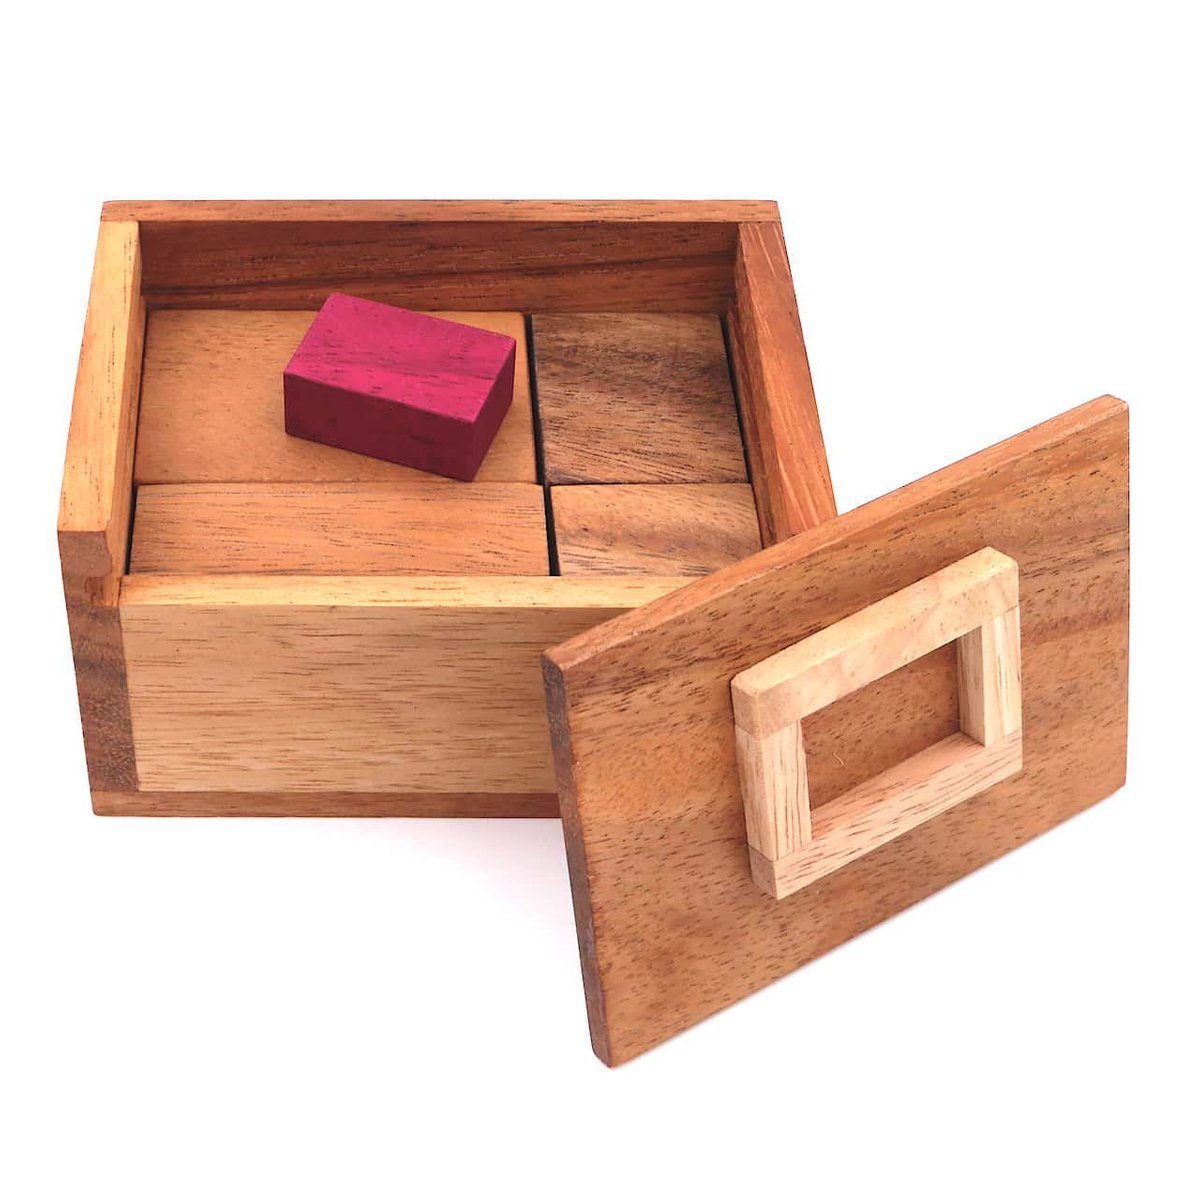 ROMBOL Denkspiele Spiel, 3D-Puzzle Holz, aus anspruchsvolles, Holzspiel Teufelsstein Knobelspiel - interessantes